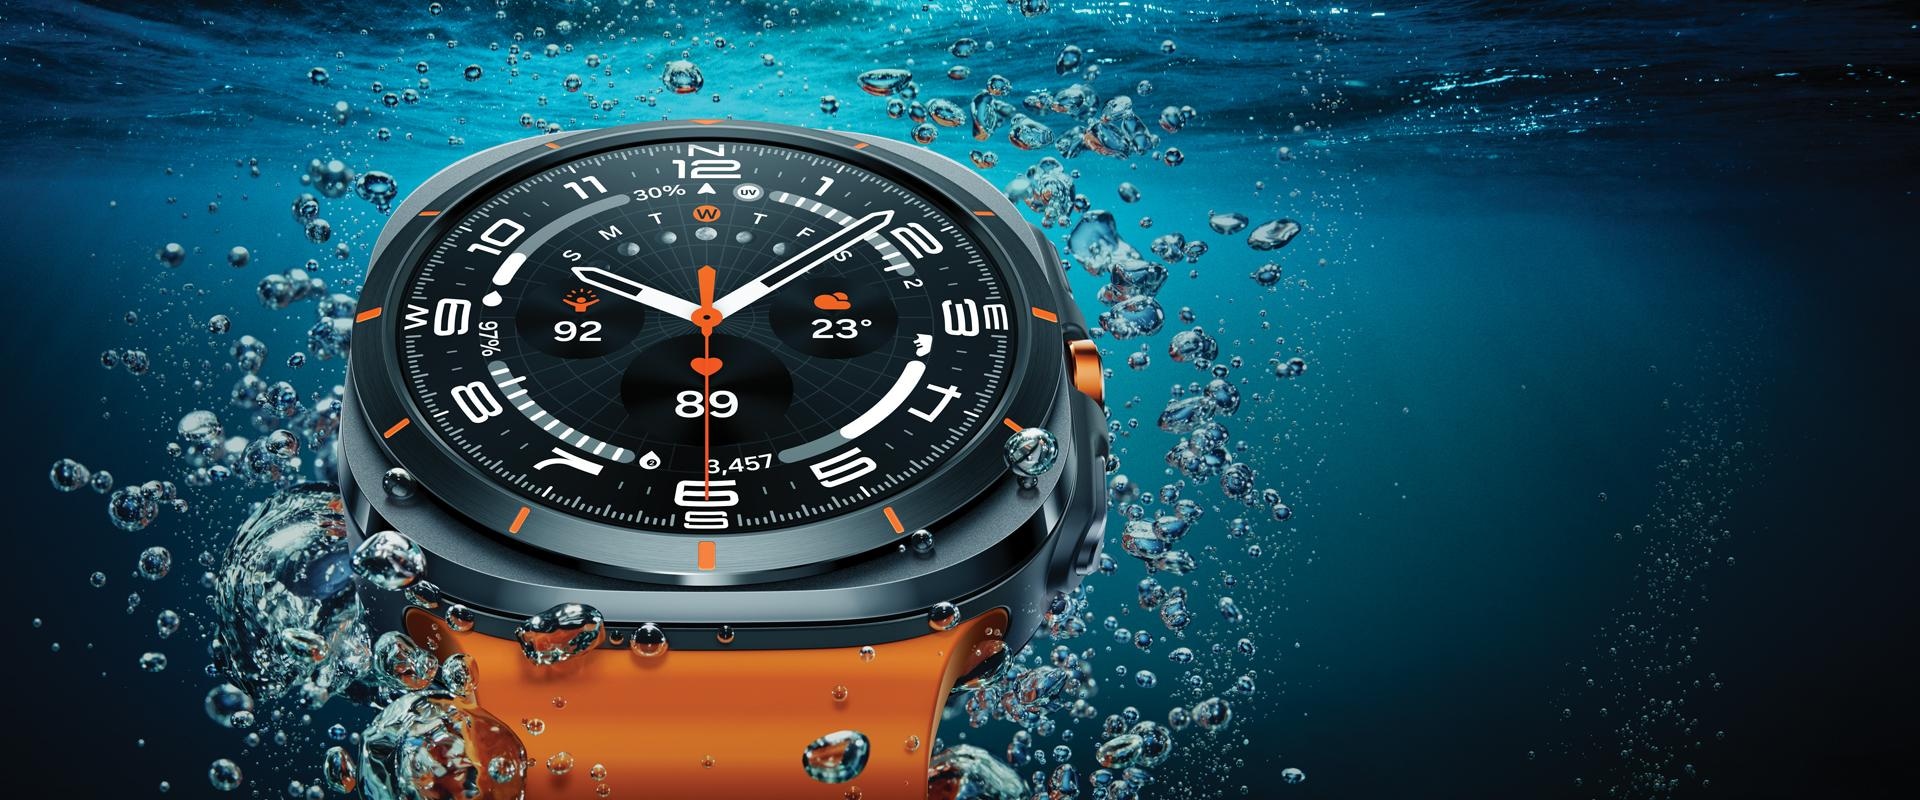 Une Galaxy Watch Ultra est vue en gros plan dans l'eau près de la surface, mettant en valeur son design.